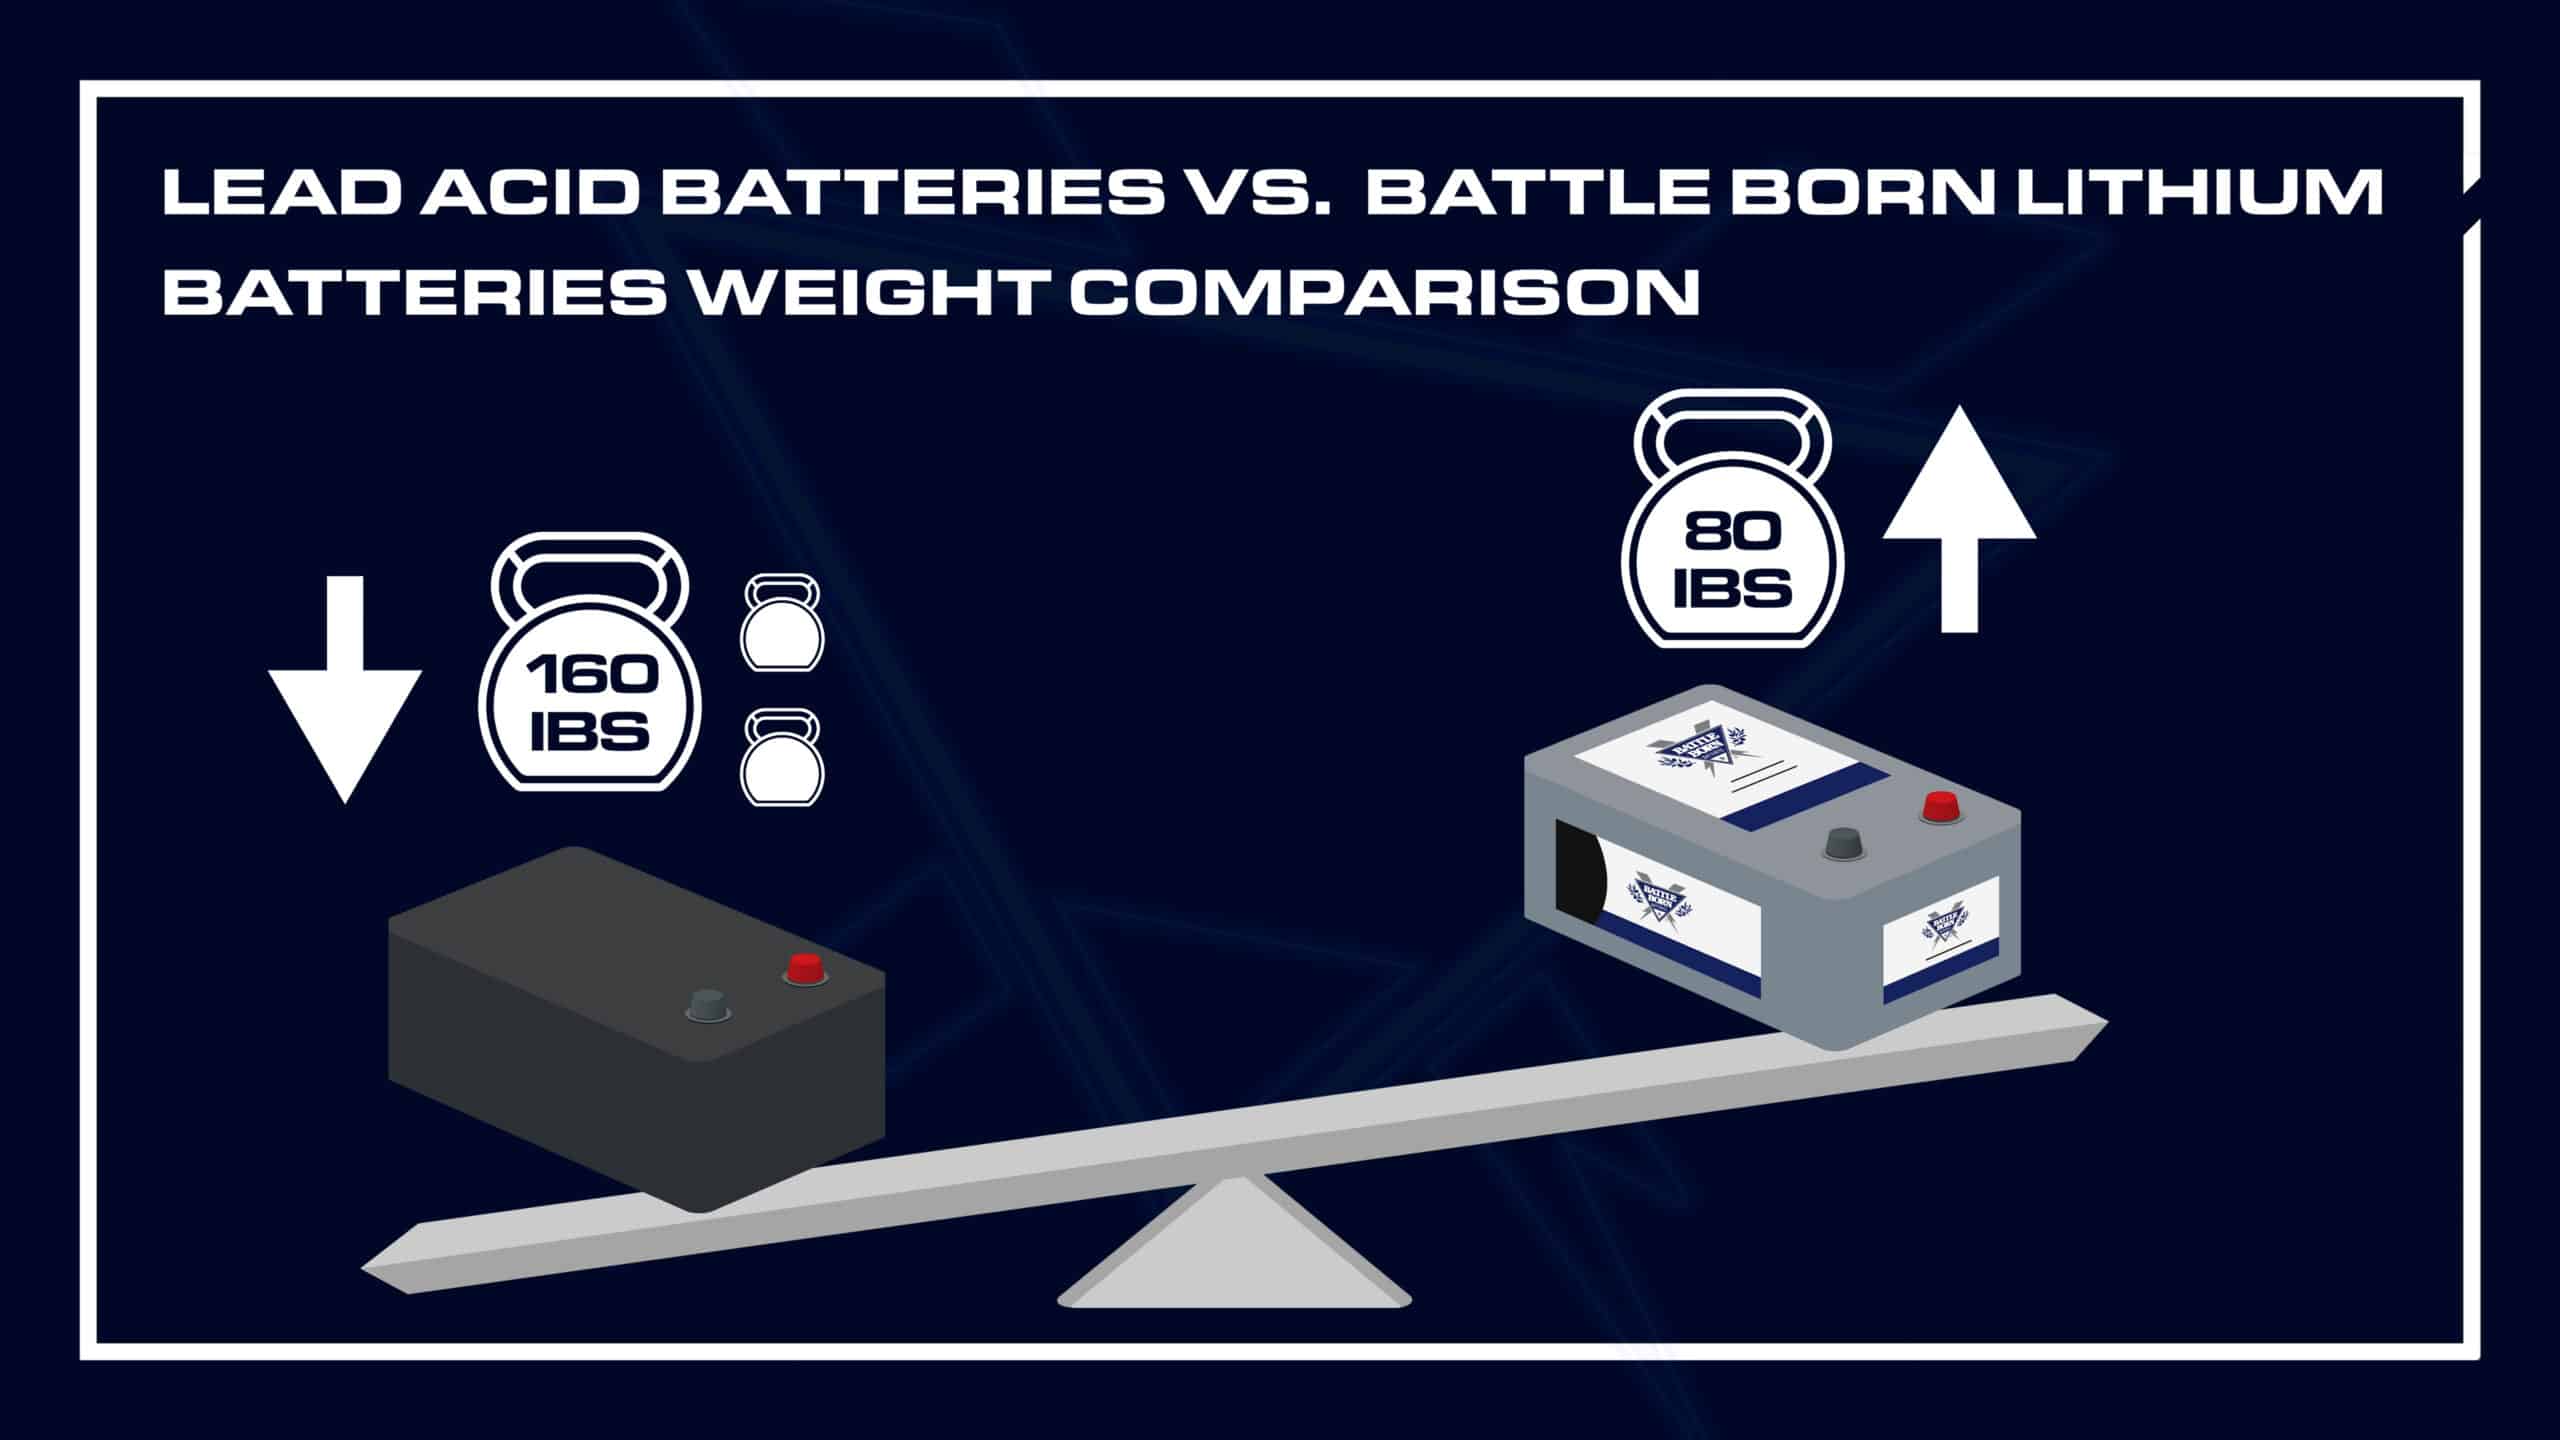 Weight Comparison of lead acid batteries vs. battle born lithium batteries